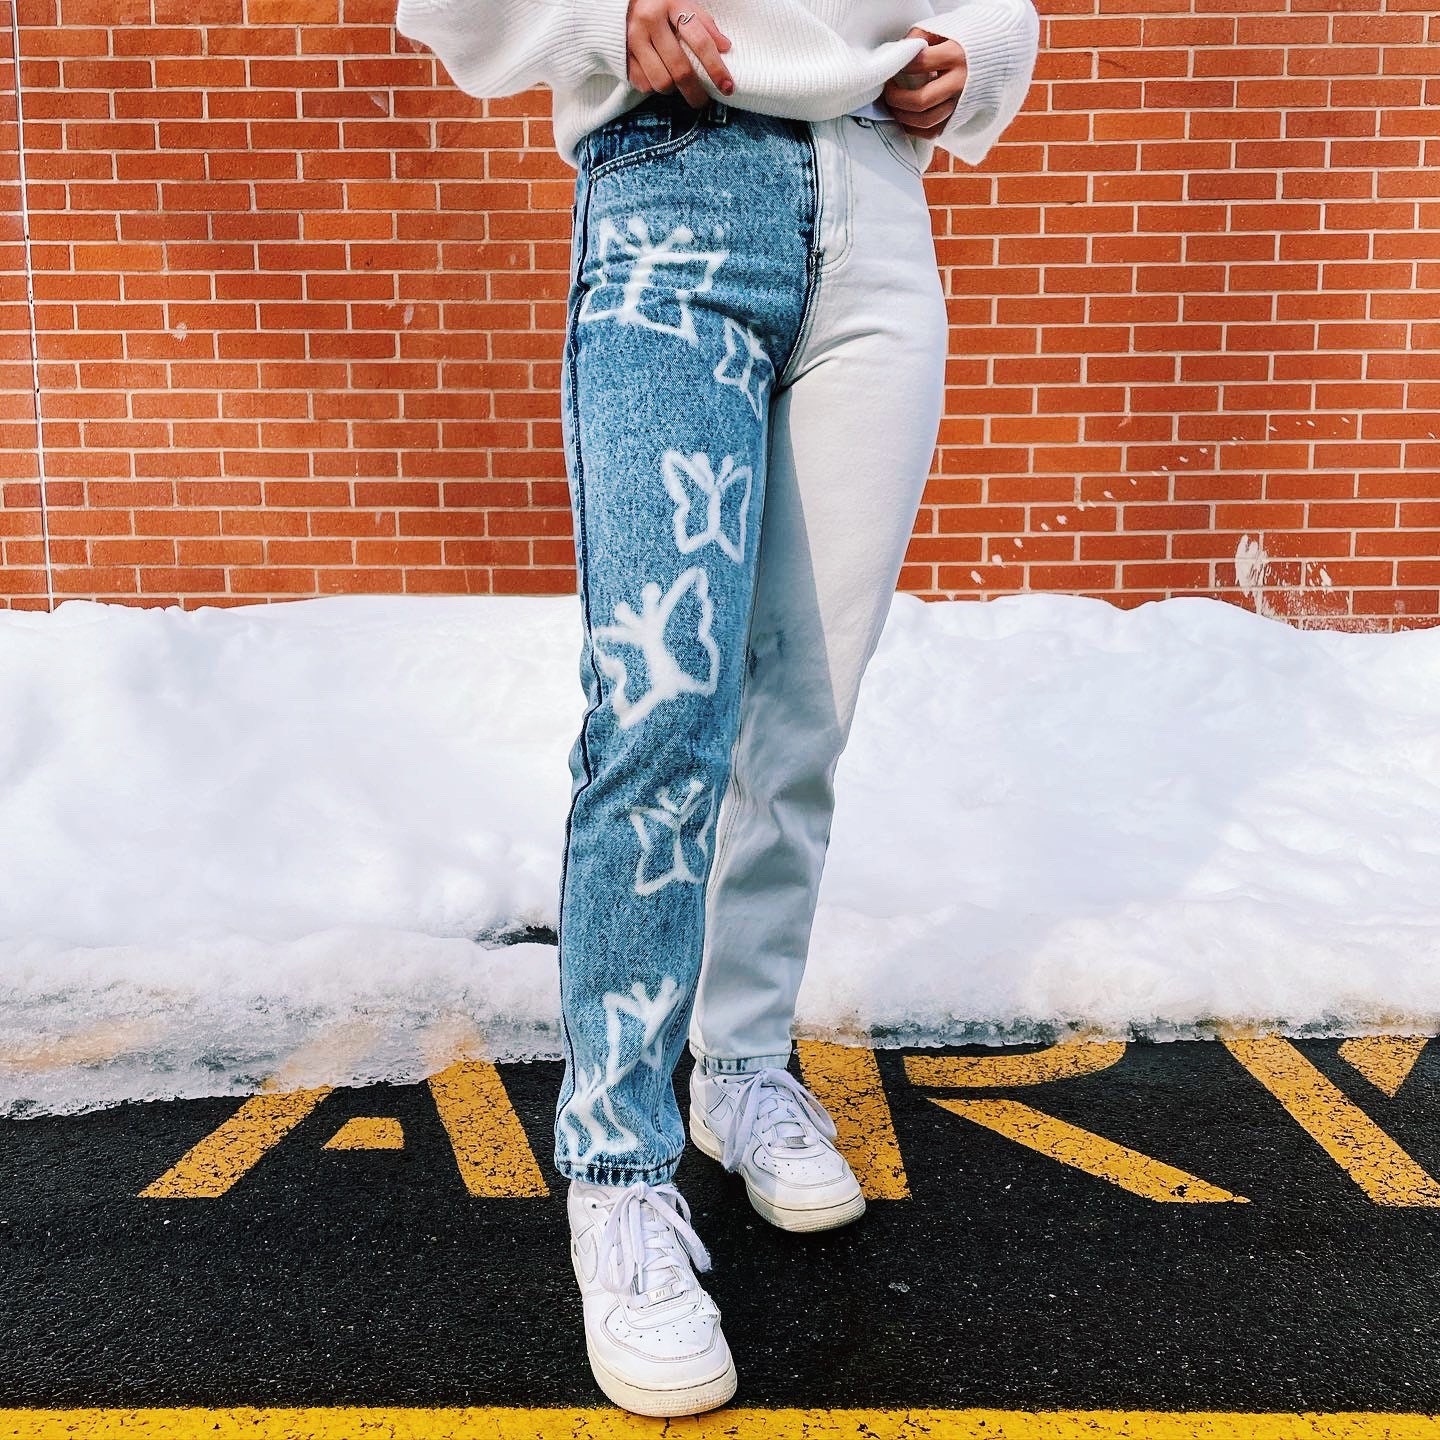 DIY Louis Vuitton Bleach Jeans